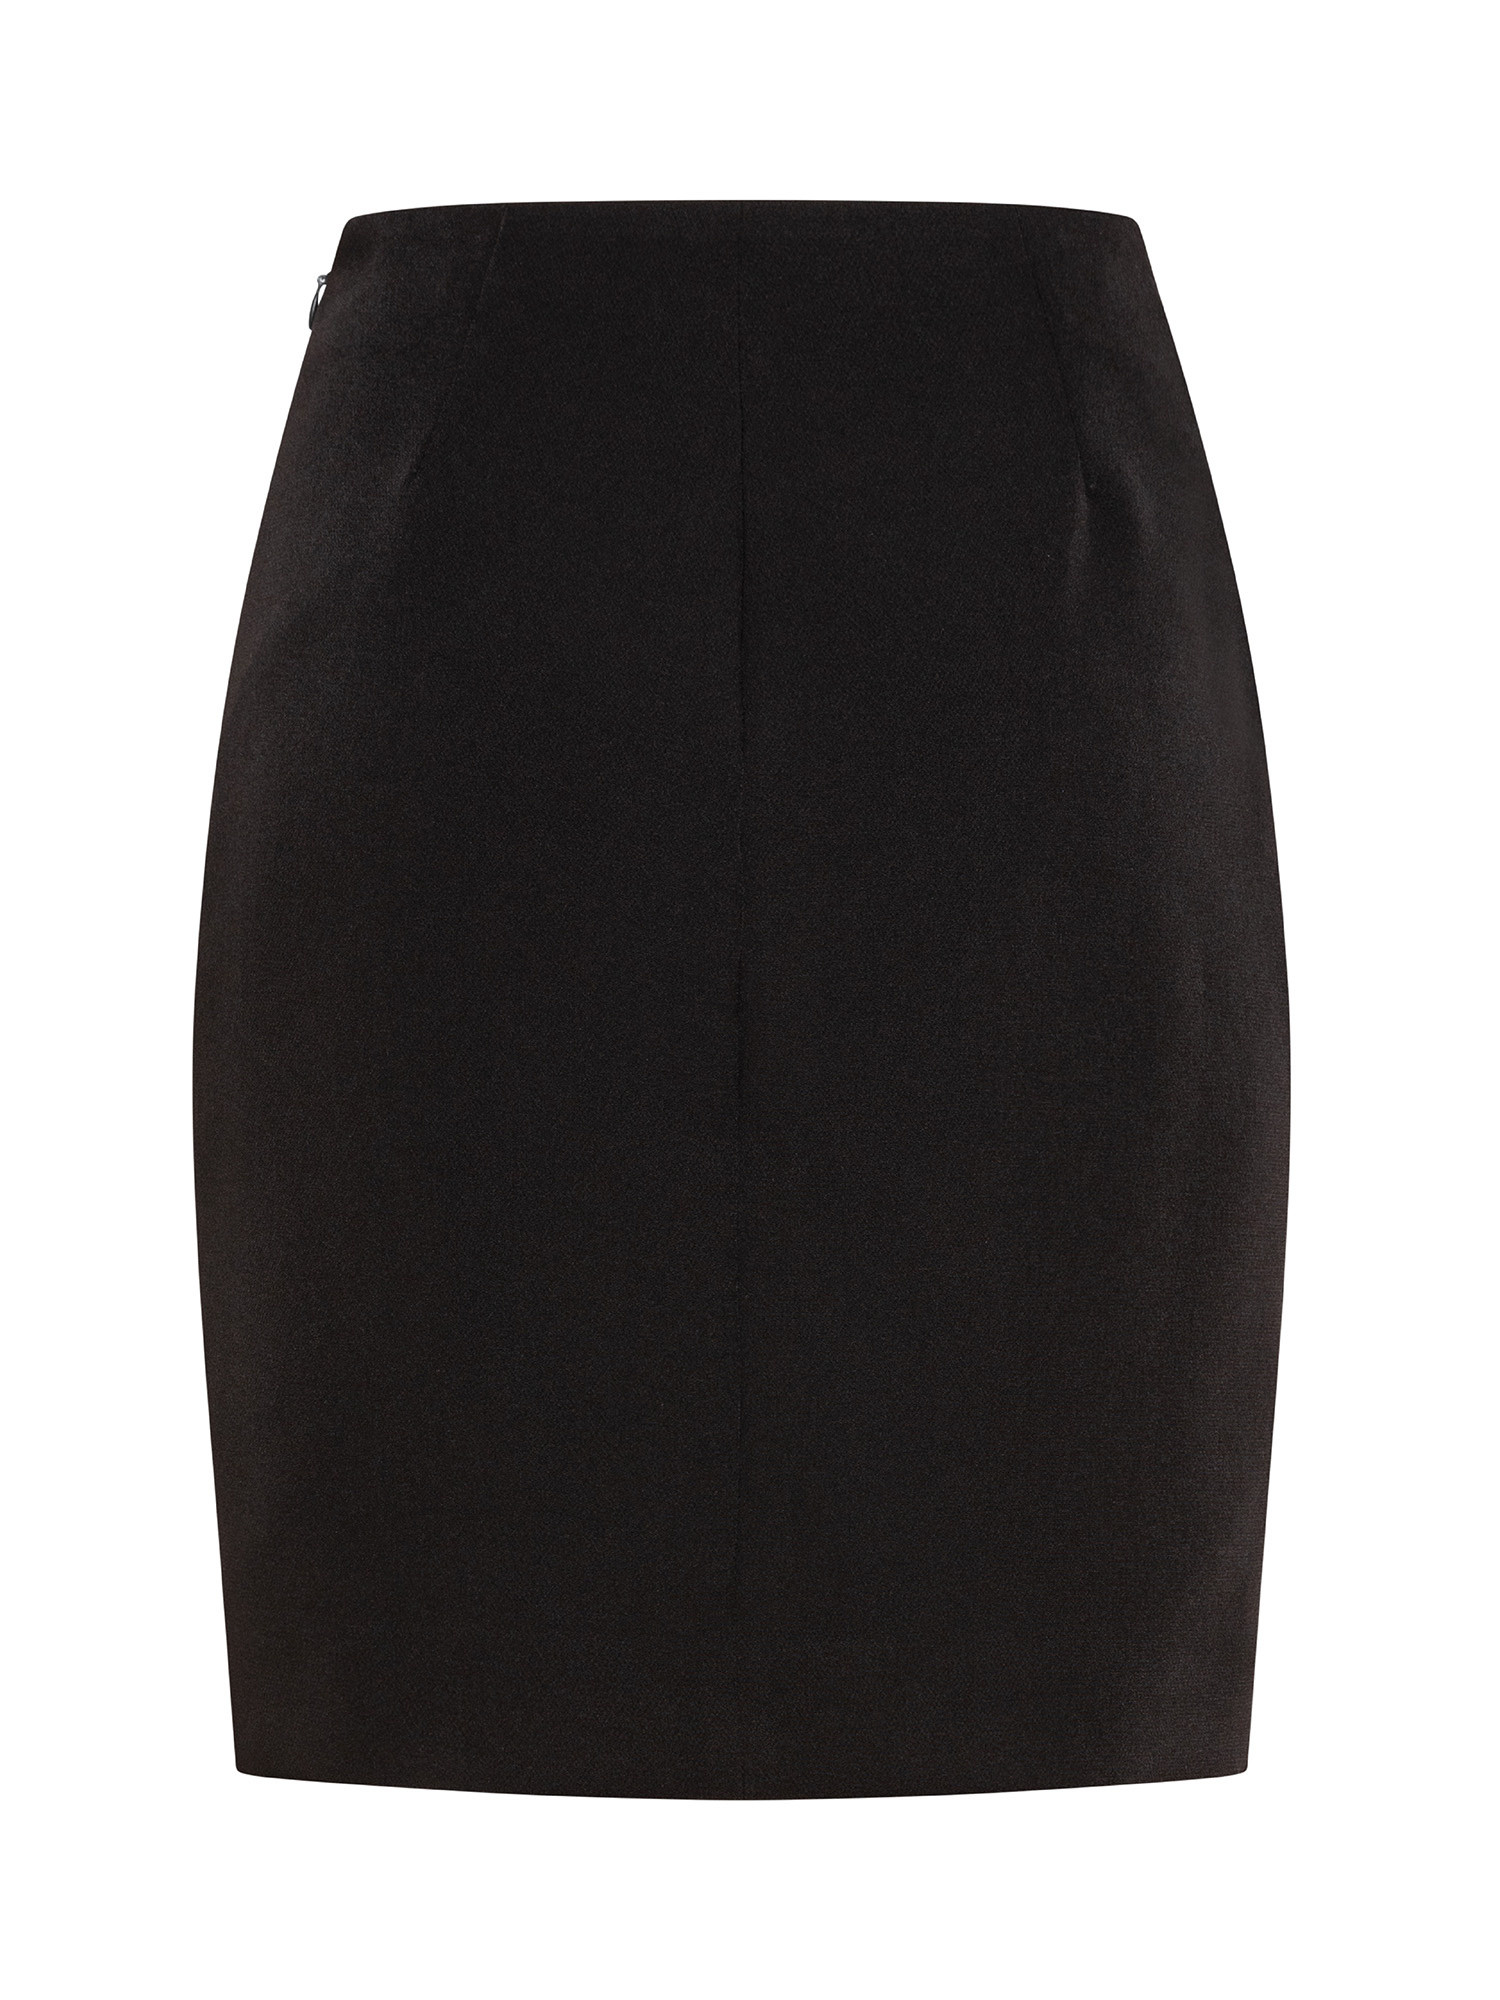 Skirt, Black, large image number 1